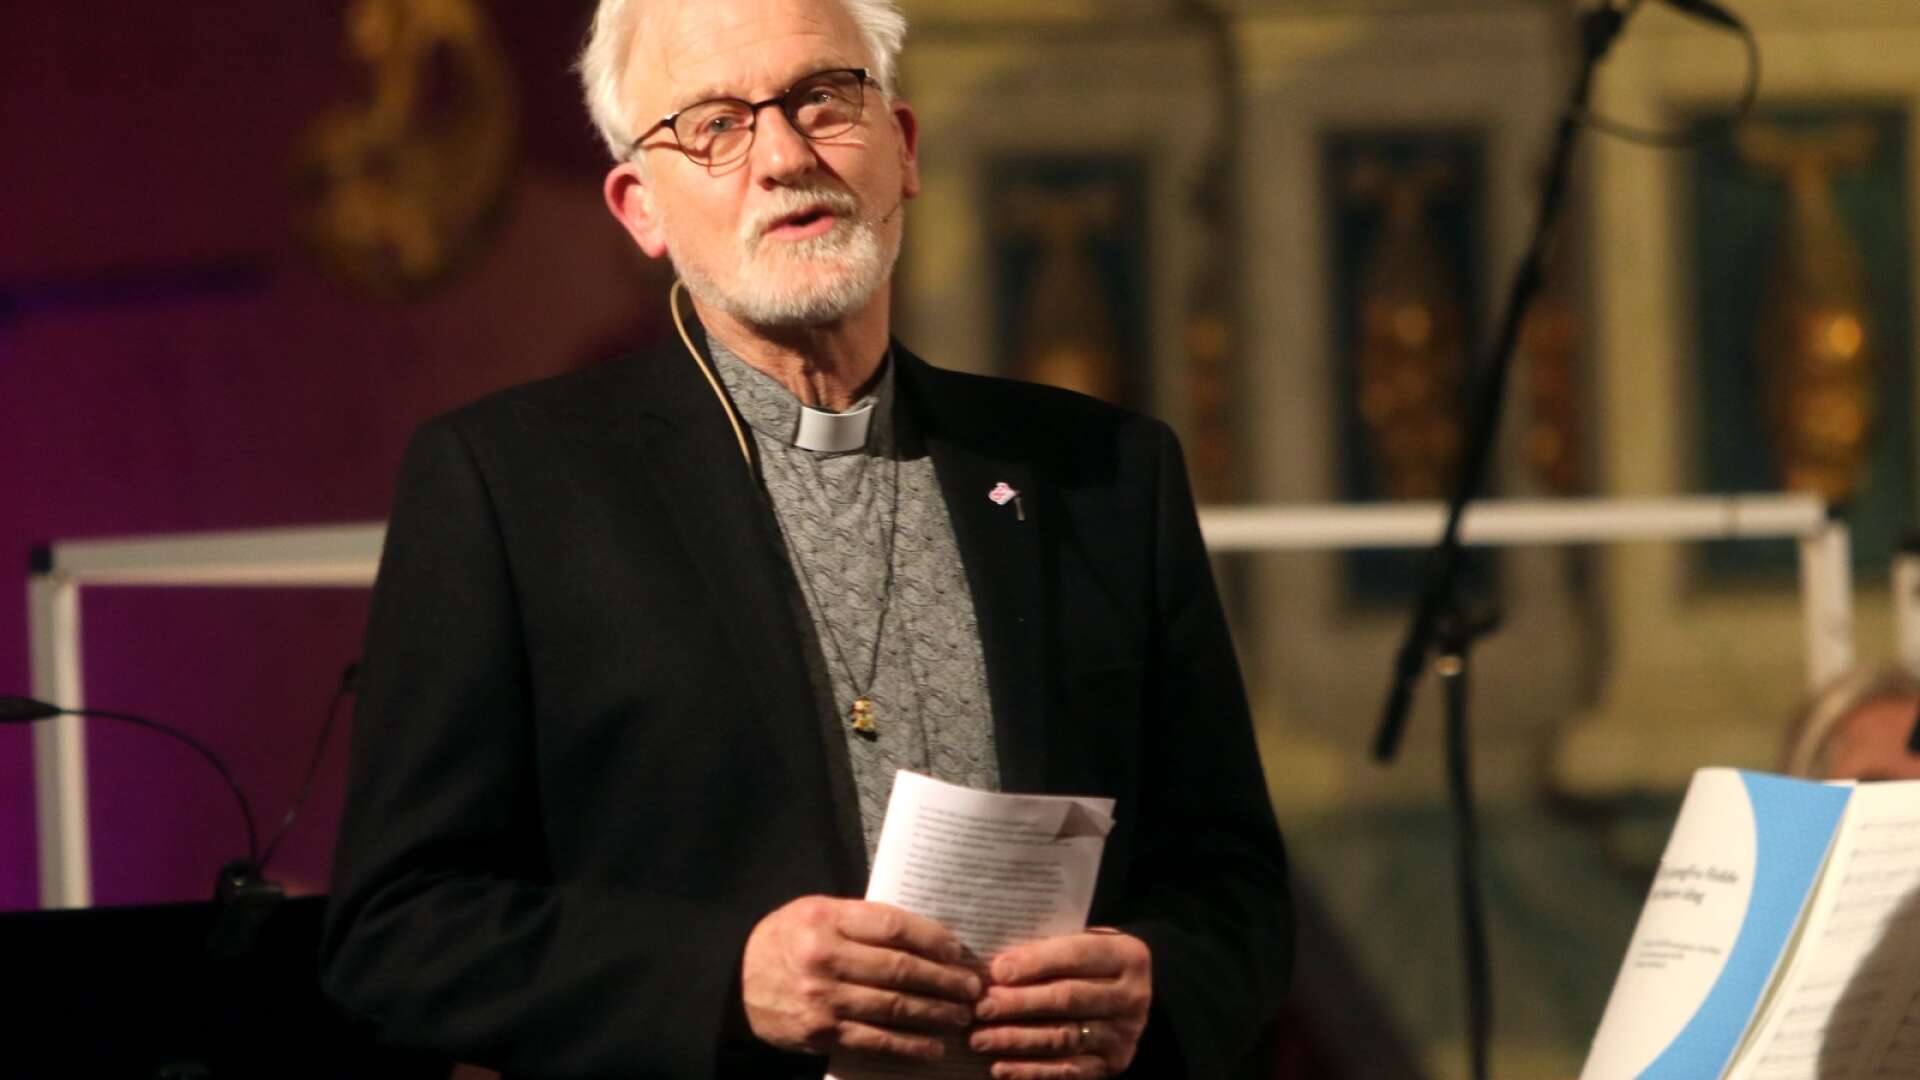 Willem-Jan Fens är kyrkoherde i Mariestads församling. 